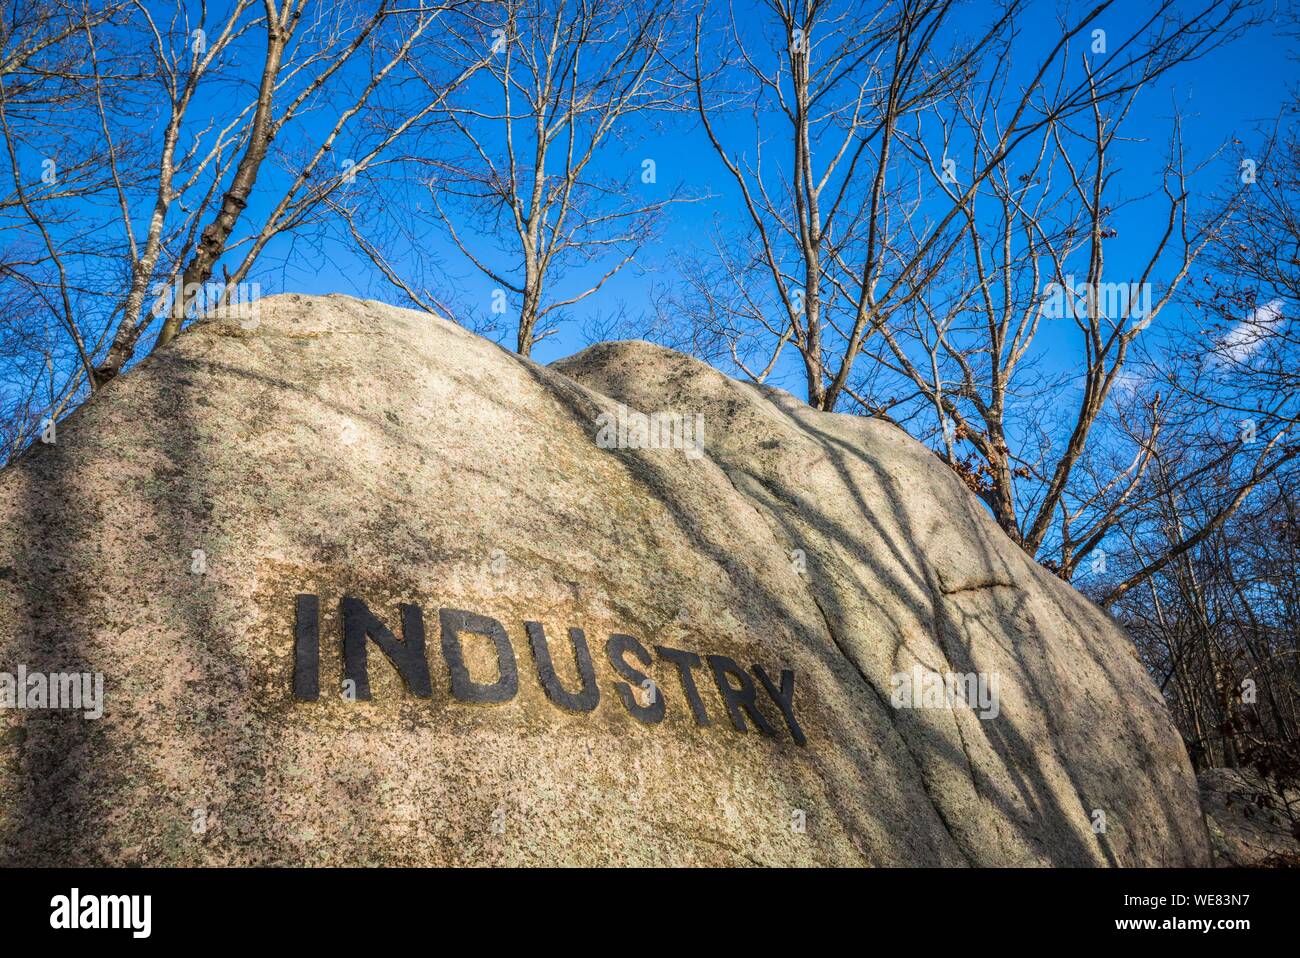 Stati Uniti, New England, Massachusetts, Cape Ann, Gloucester, Dogtown Rocks, ispiratrice dicendo scolpito su massi nel 1920s, ora in una città pubica park, Industria Foto Stock